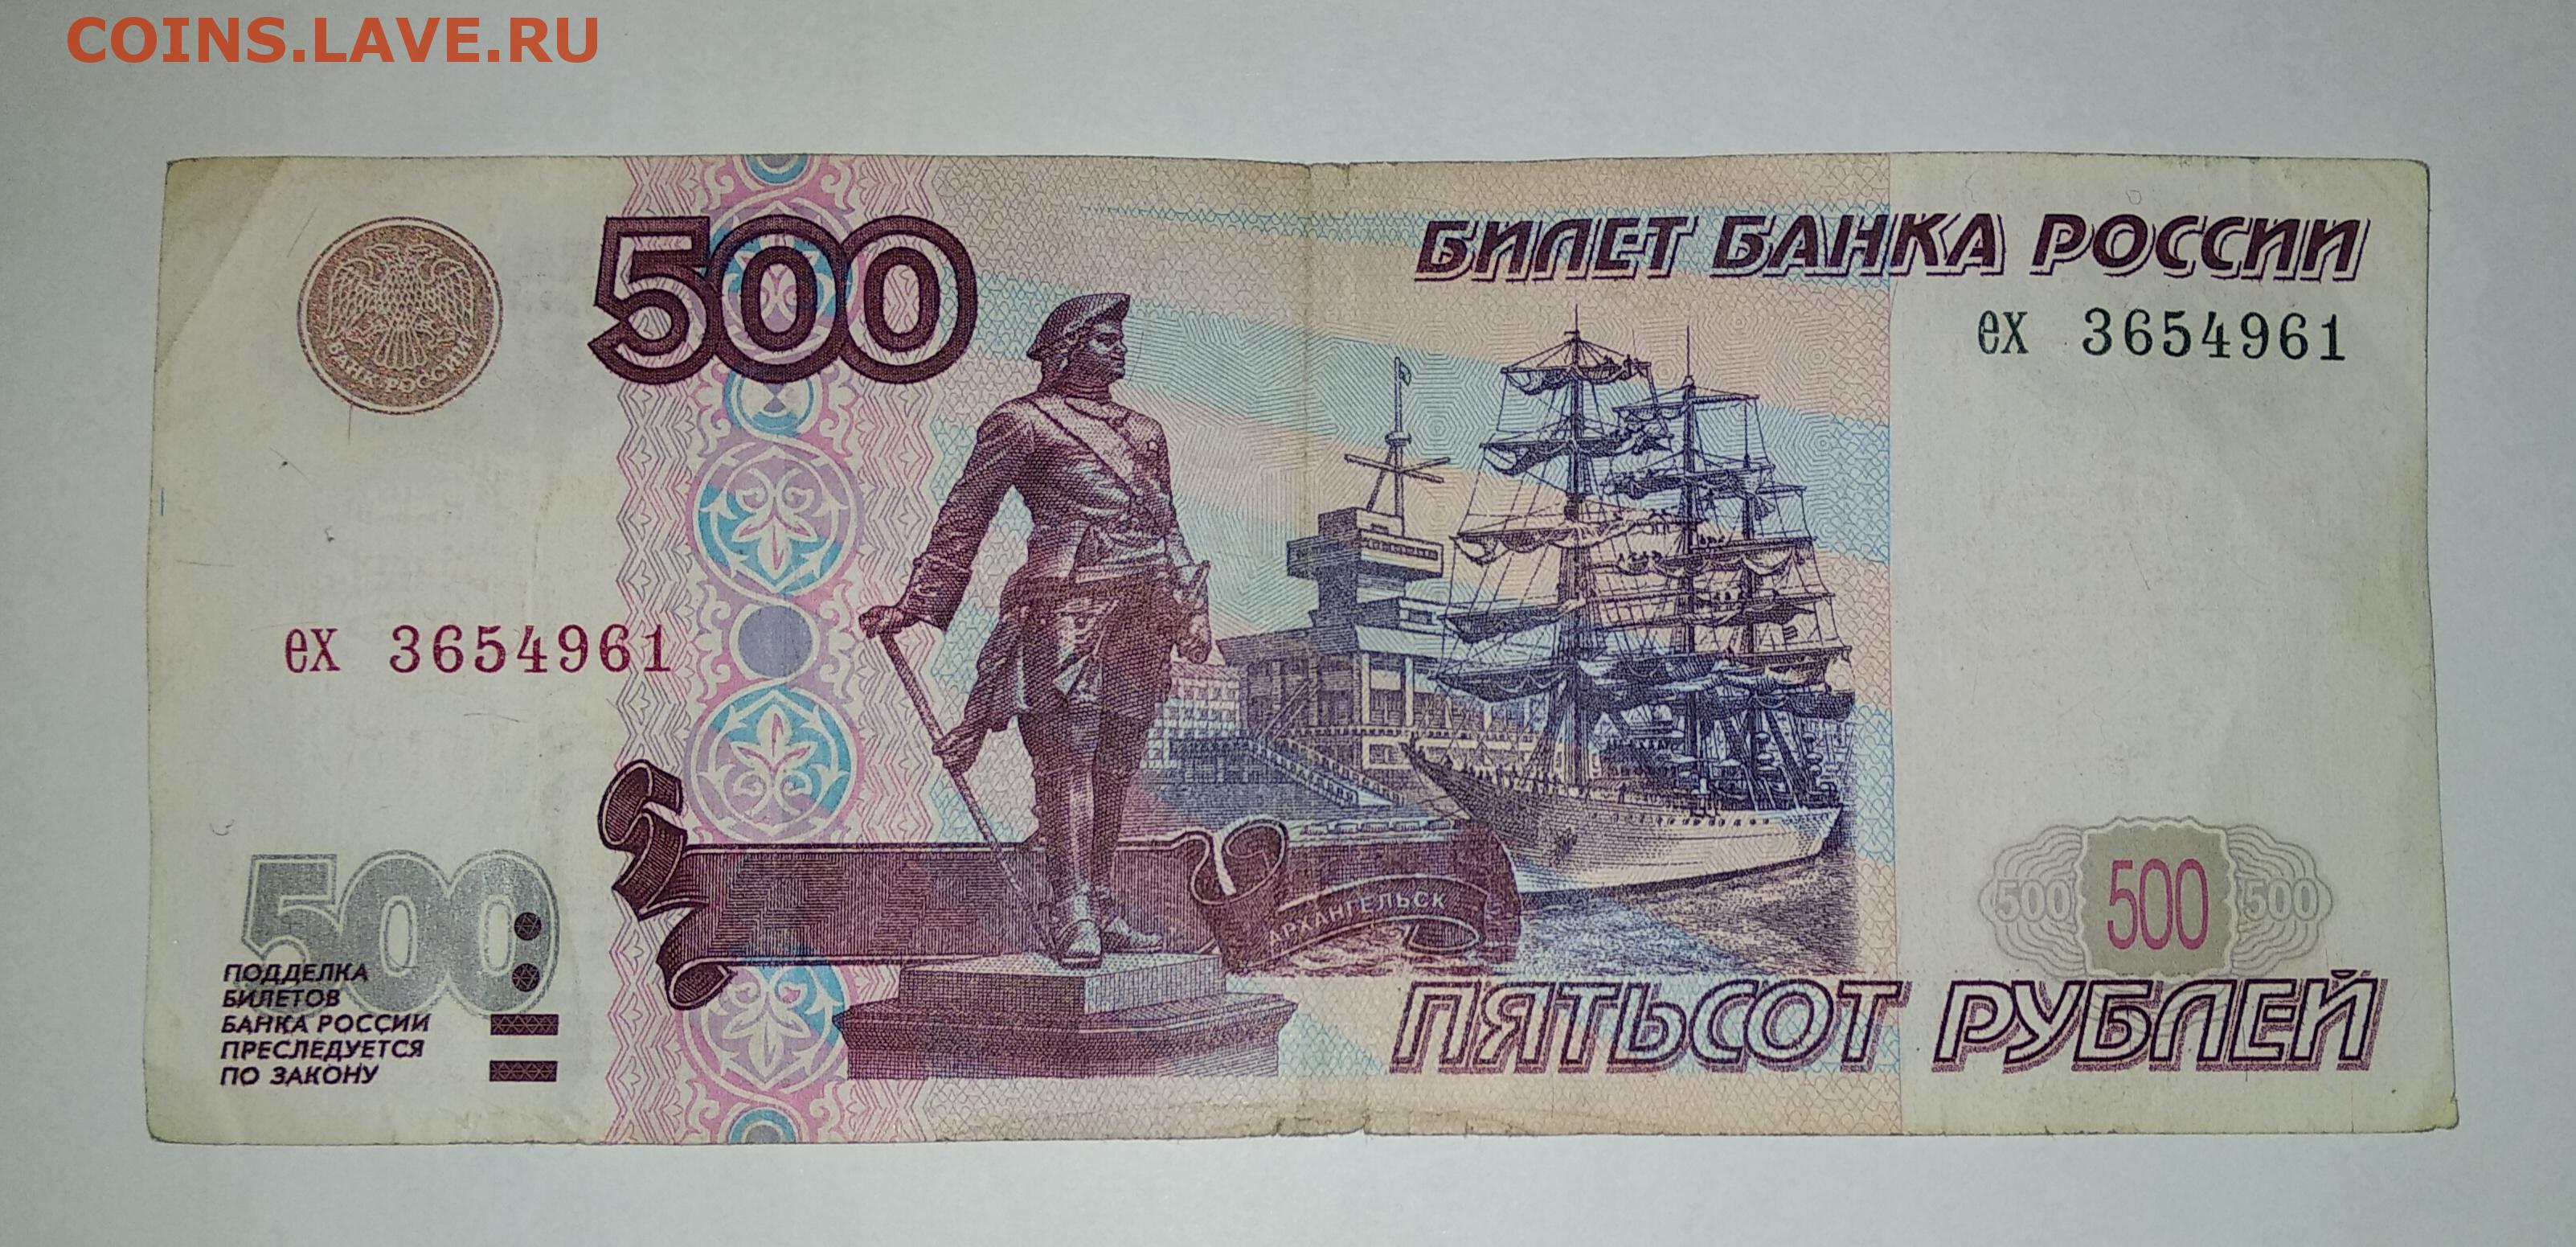 Долями 500 рублей. Купюра 500 рублей. 500 Рублей 1997. 500 Рублей 1997г. Купюра 500 рублей с корабликом.